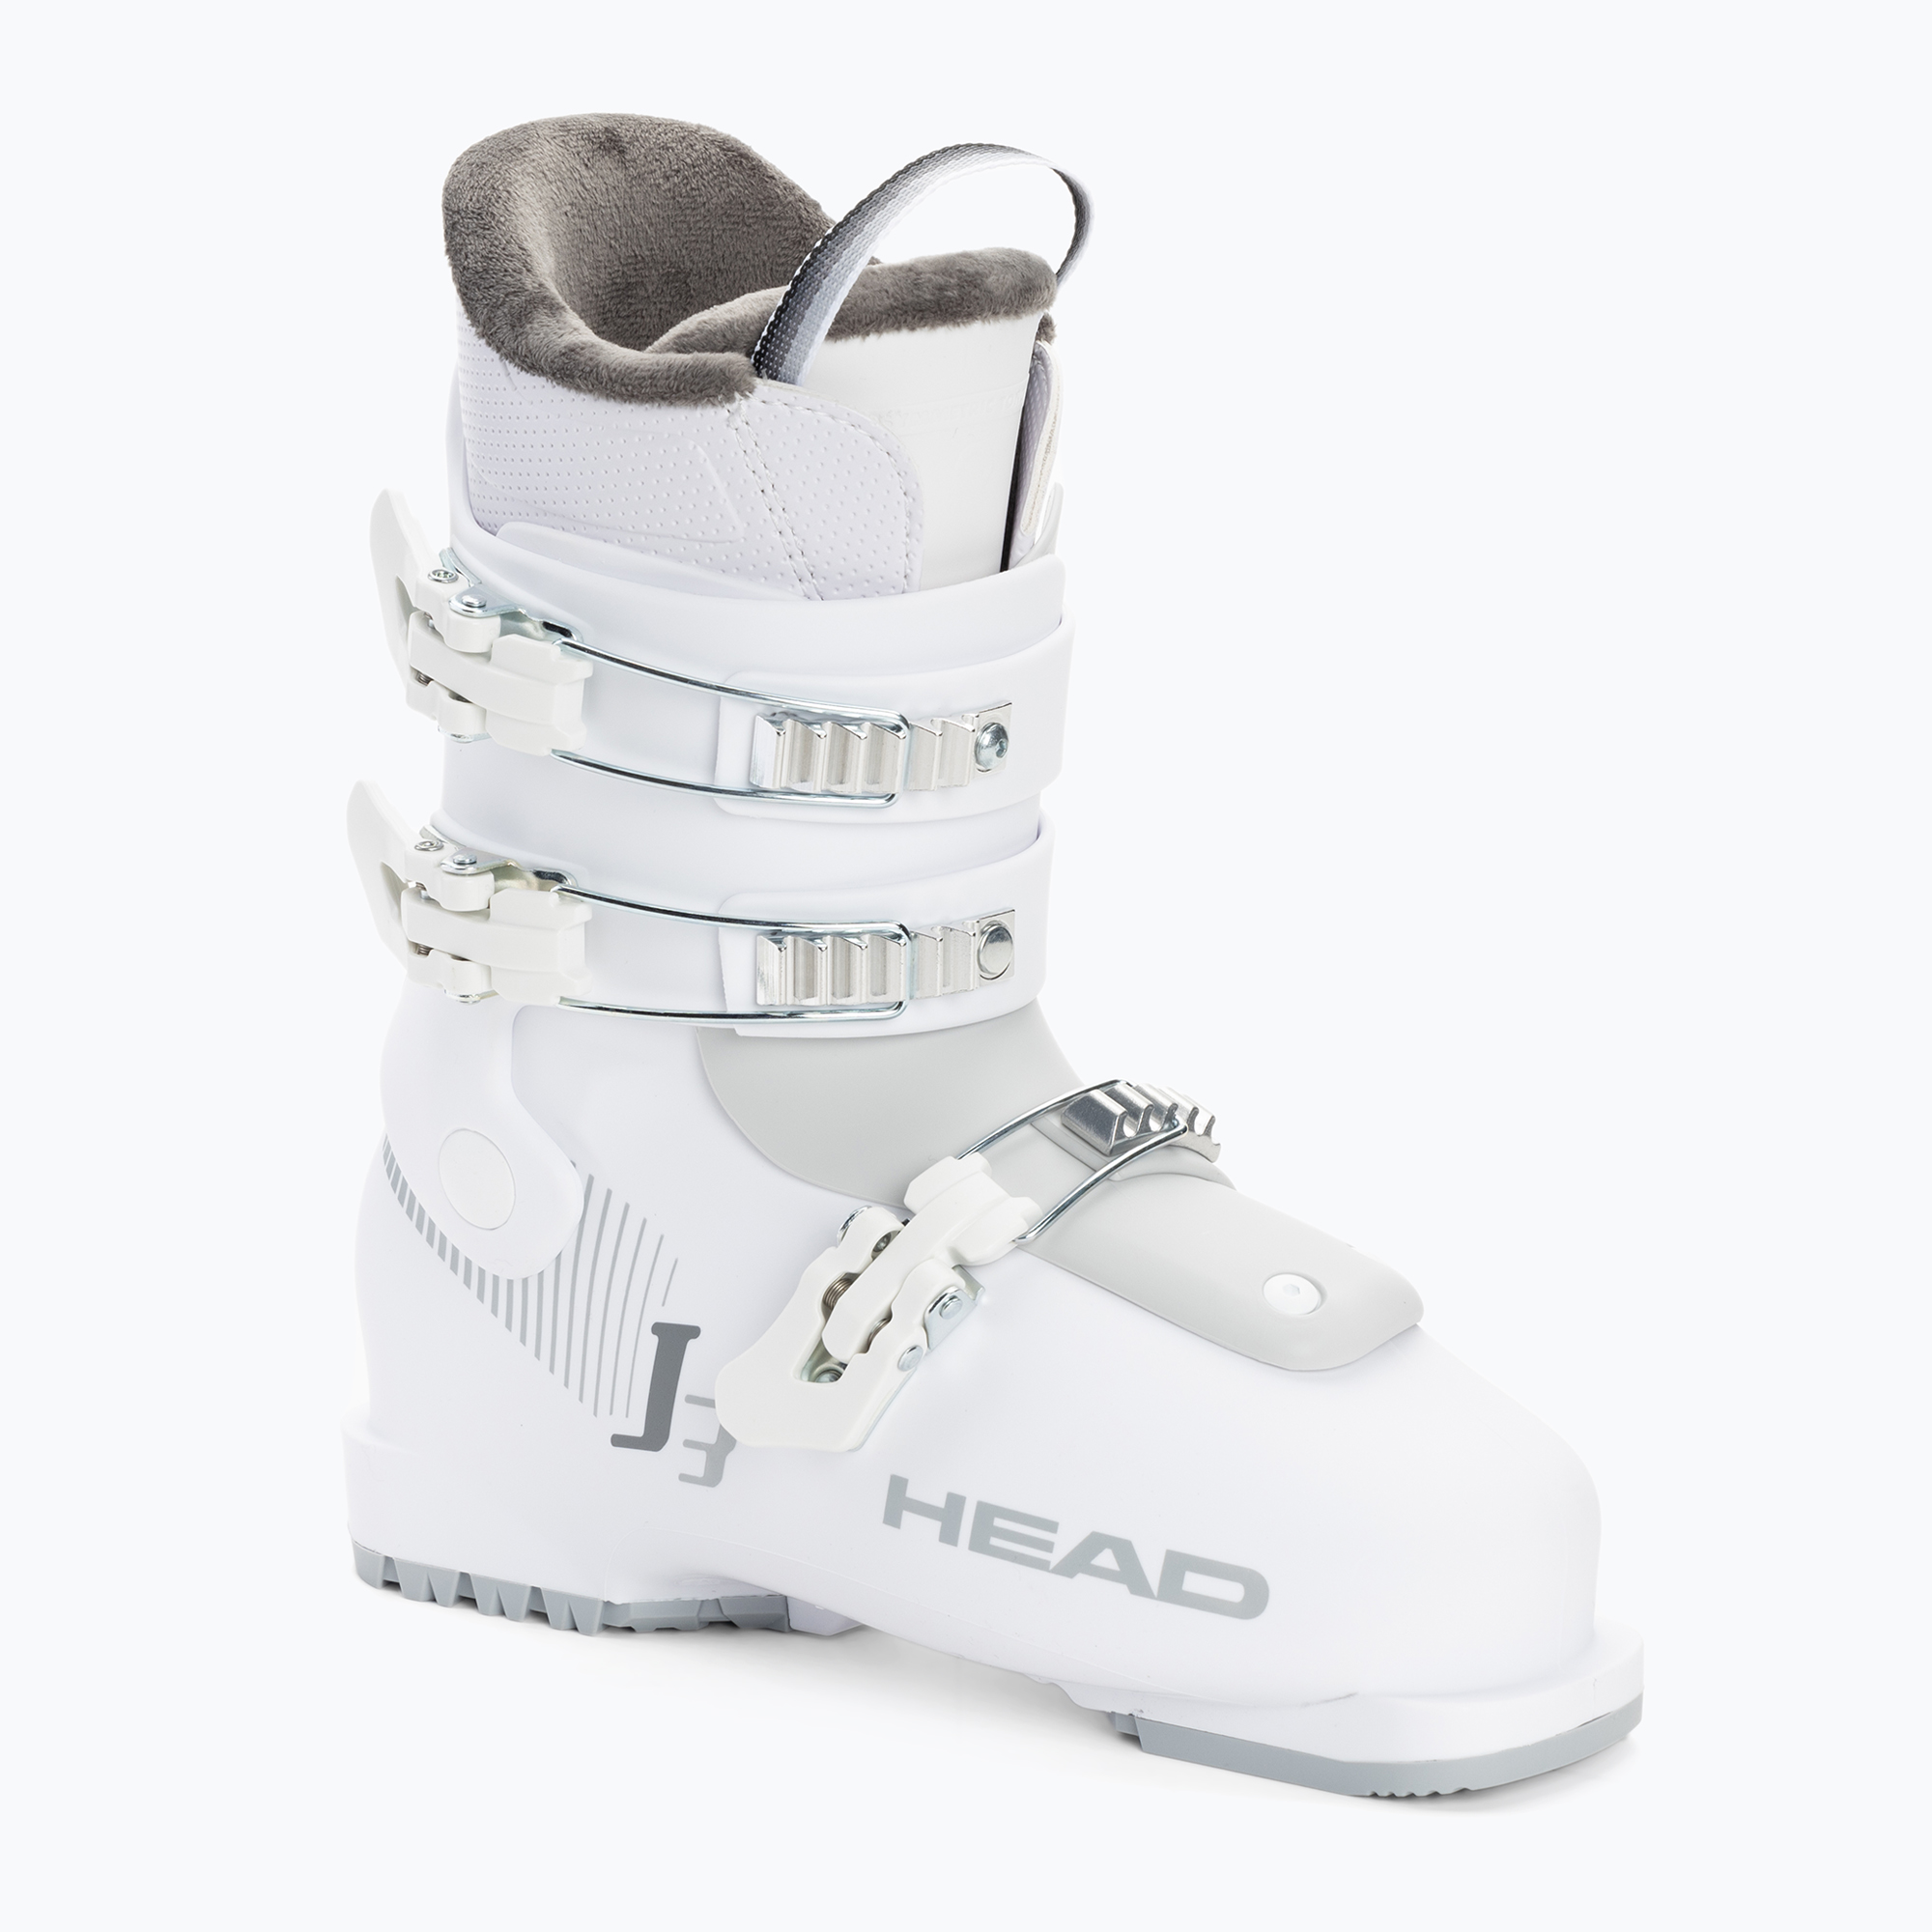 Детски ски обувки HEAD J3 бели/сиви